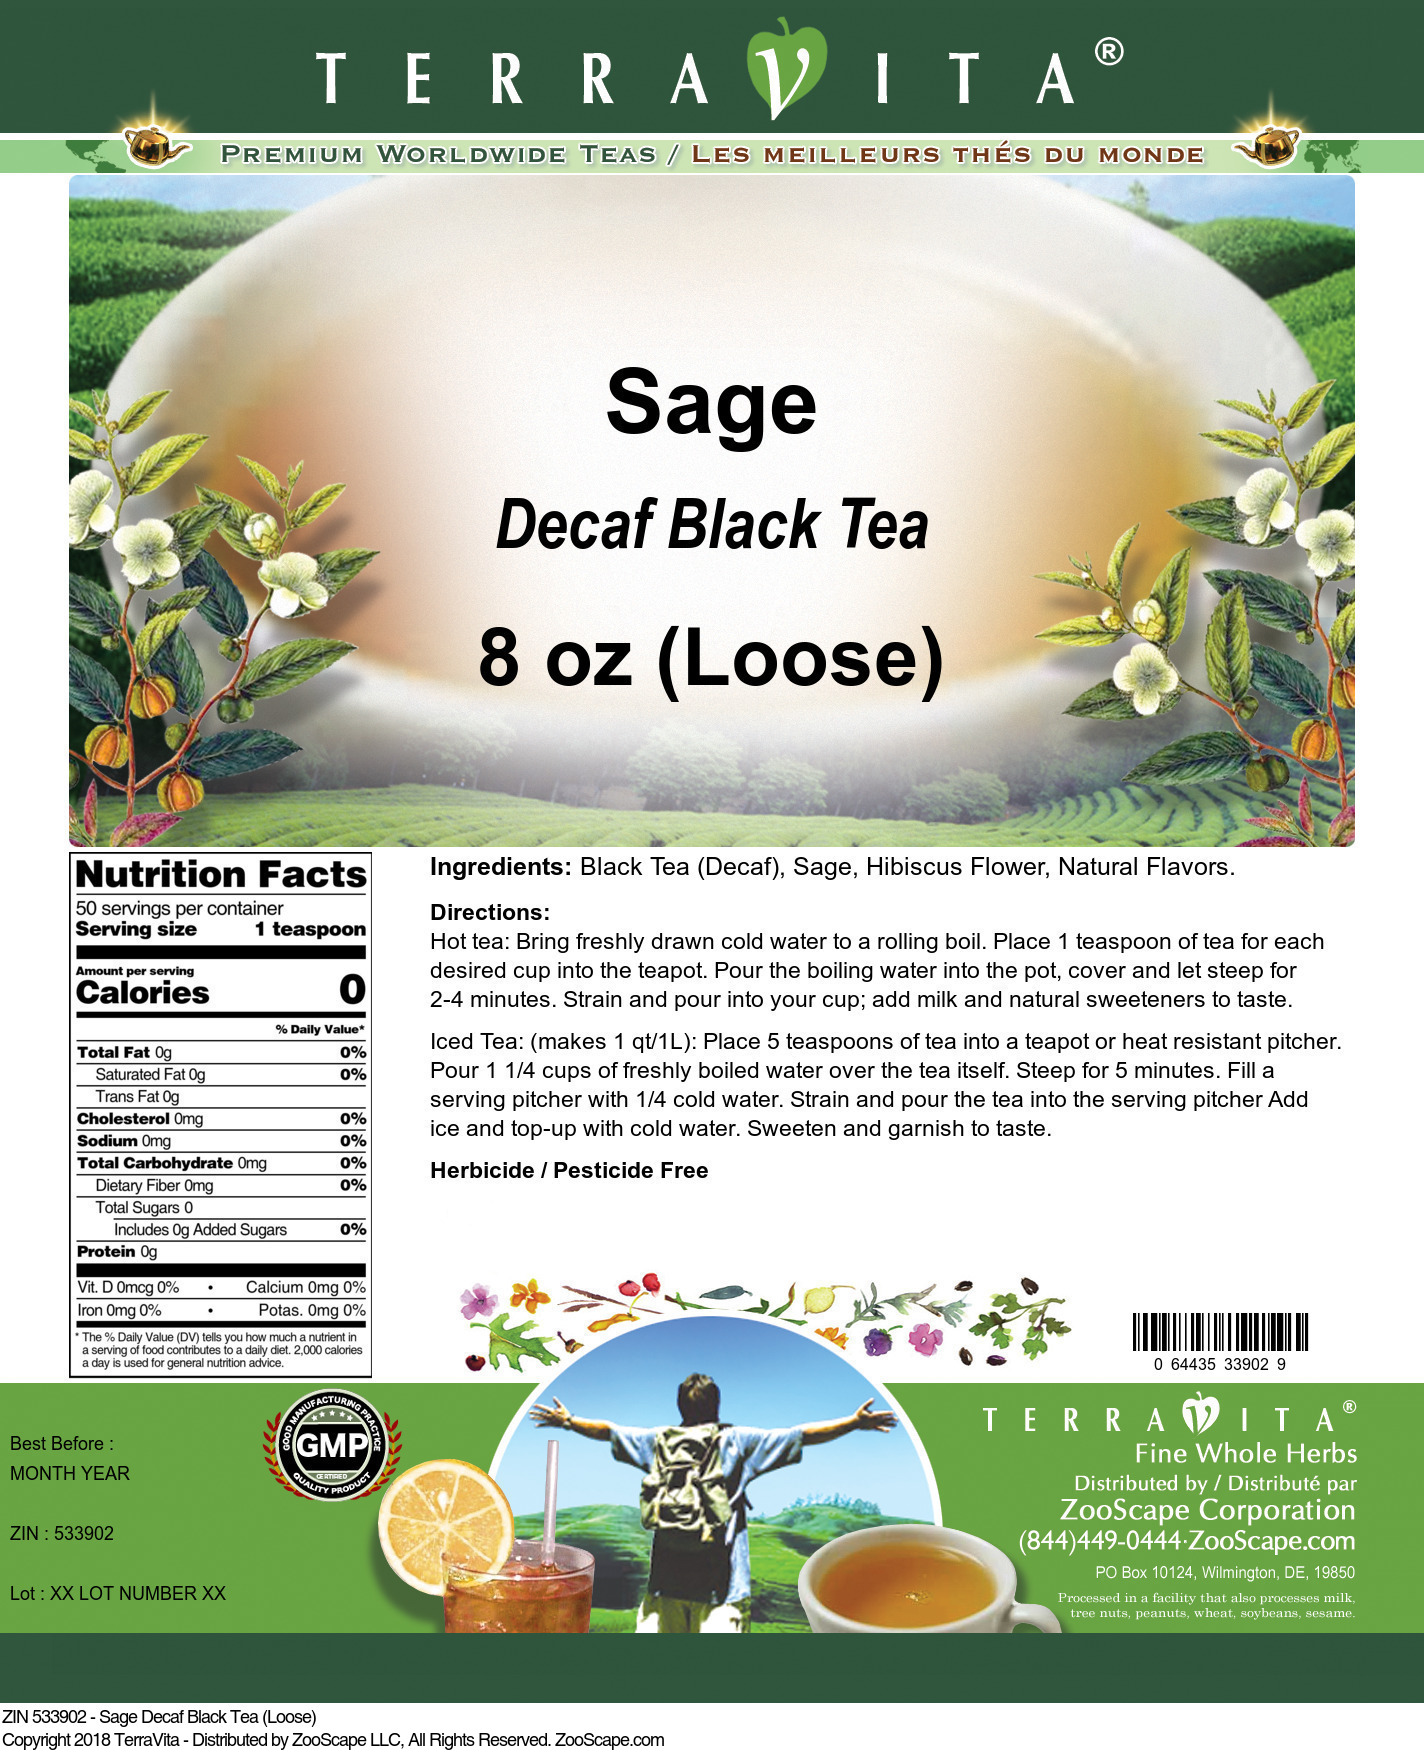 Sage Decaf Black Tea (Loose) - Label